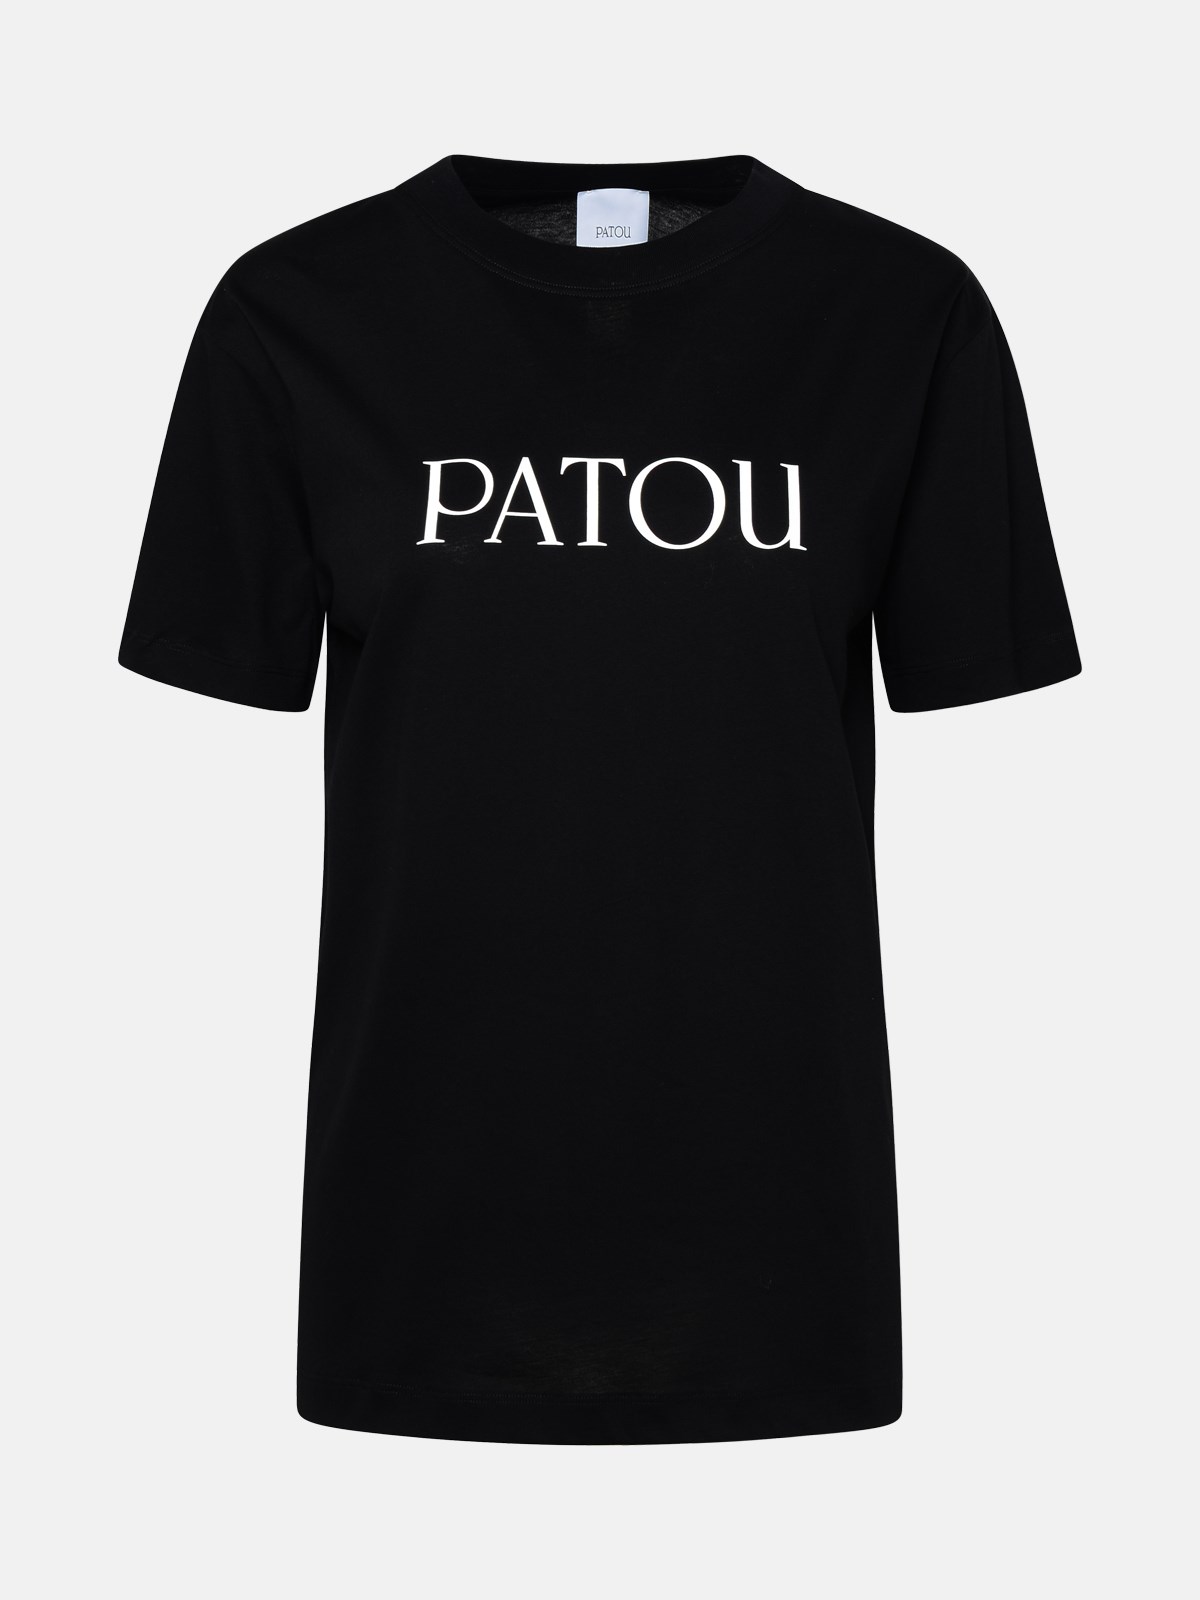 Patou Black Cotton T-shirt